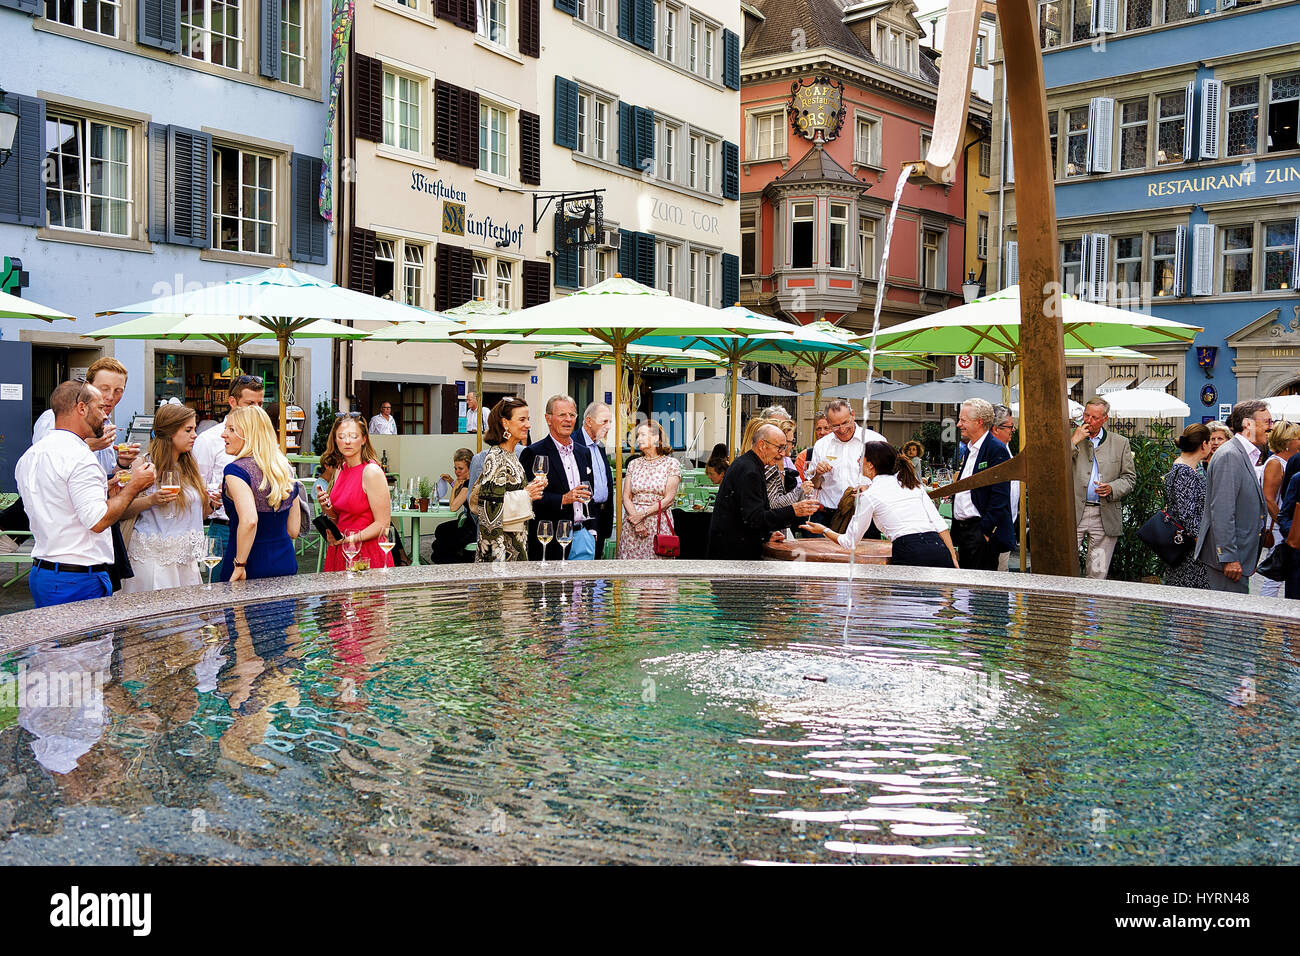 Zurich, Switzerland - September 2, 2016: People and fountain on Square Munsterhof of Zurich, Switzerland Stock Photo